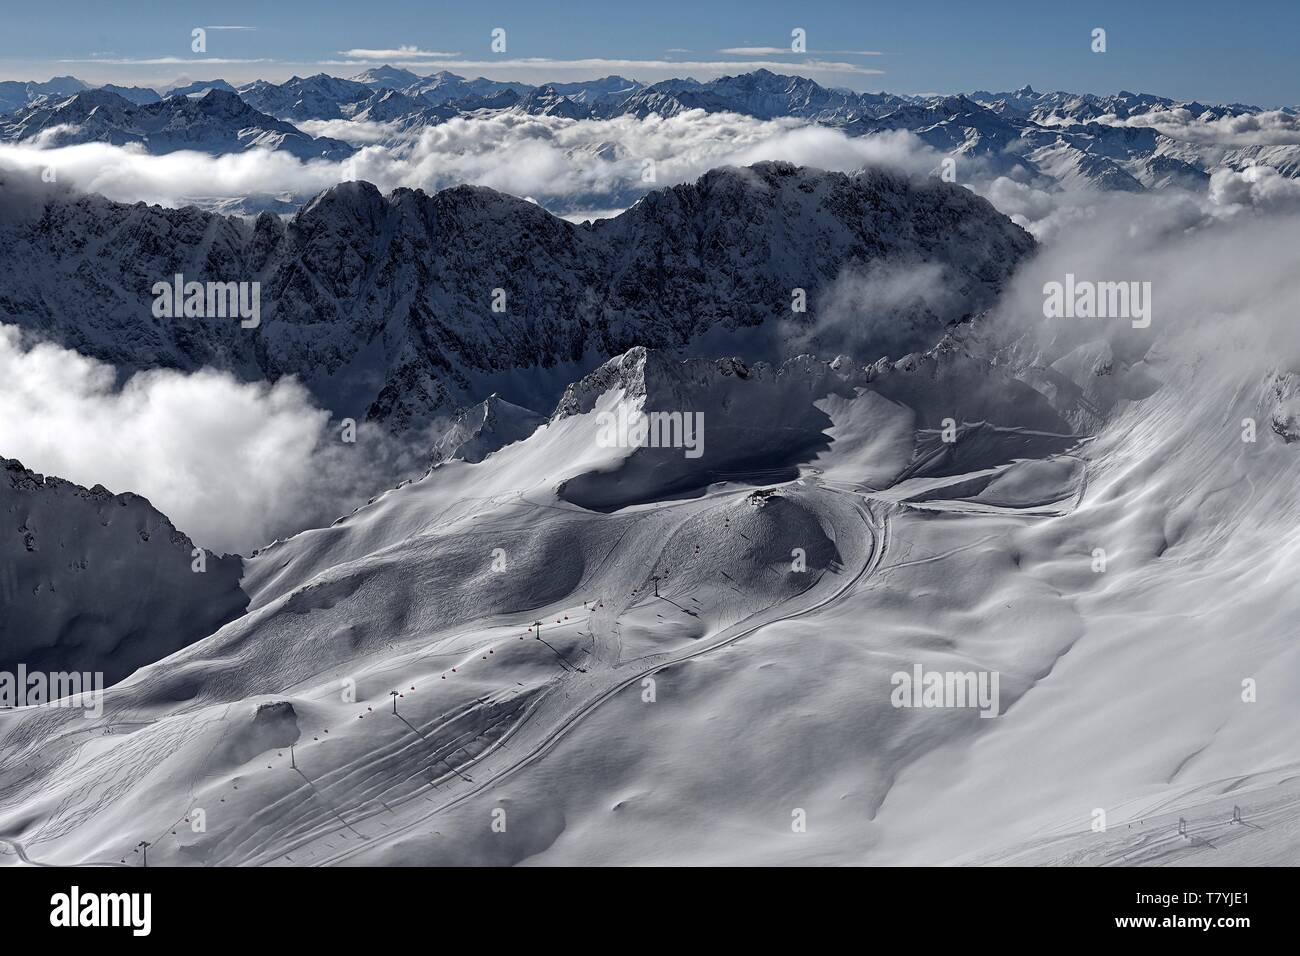 VOR dem winterlichen Alpenpanorama ist der Sessellift Sonnenkar und die Talstation zu erkennen. Der Schnee ist veloce unberührt Foto Stock